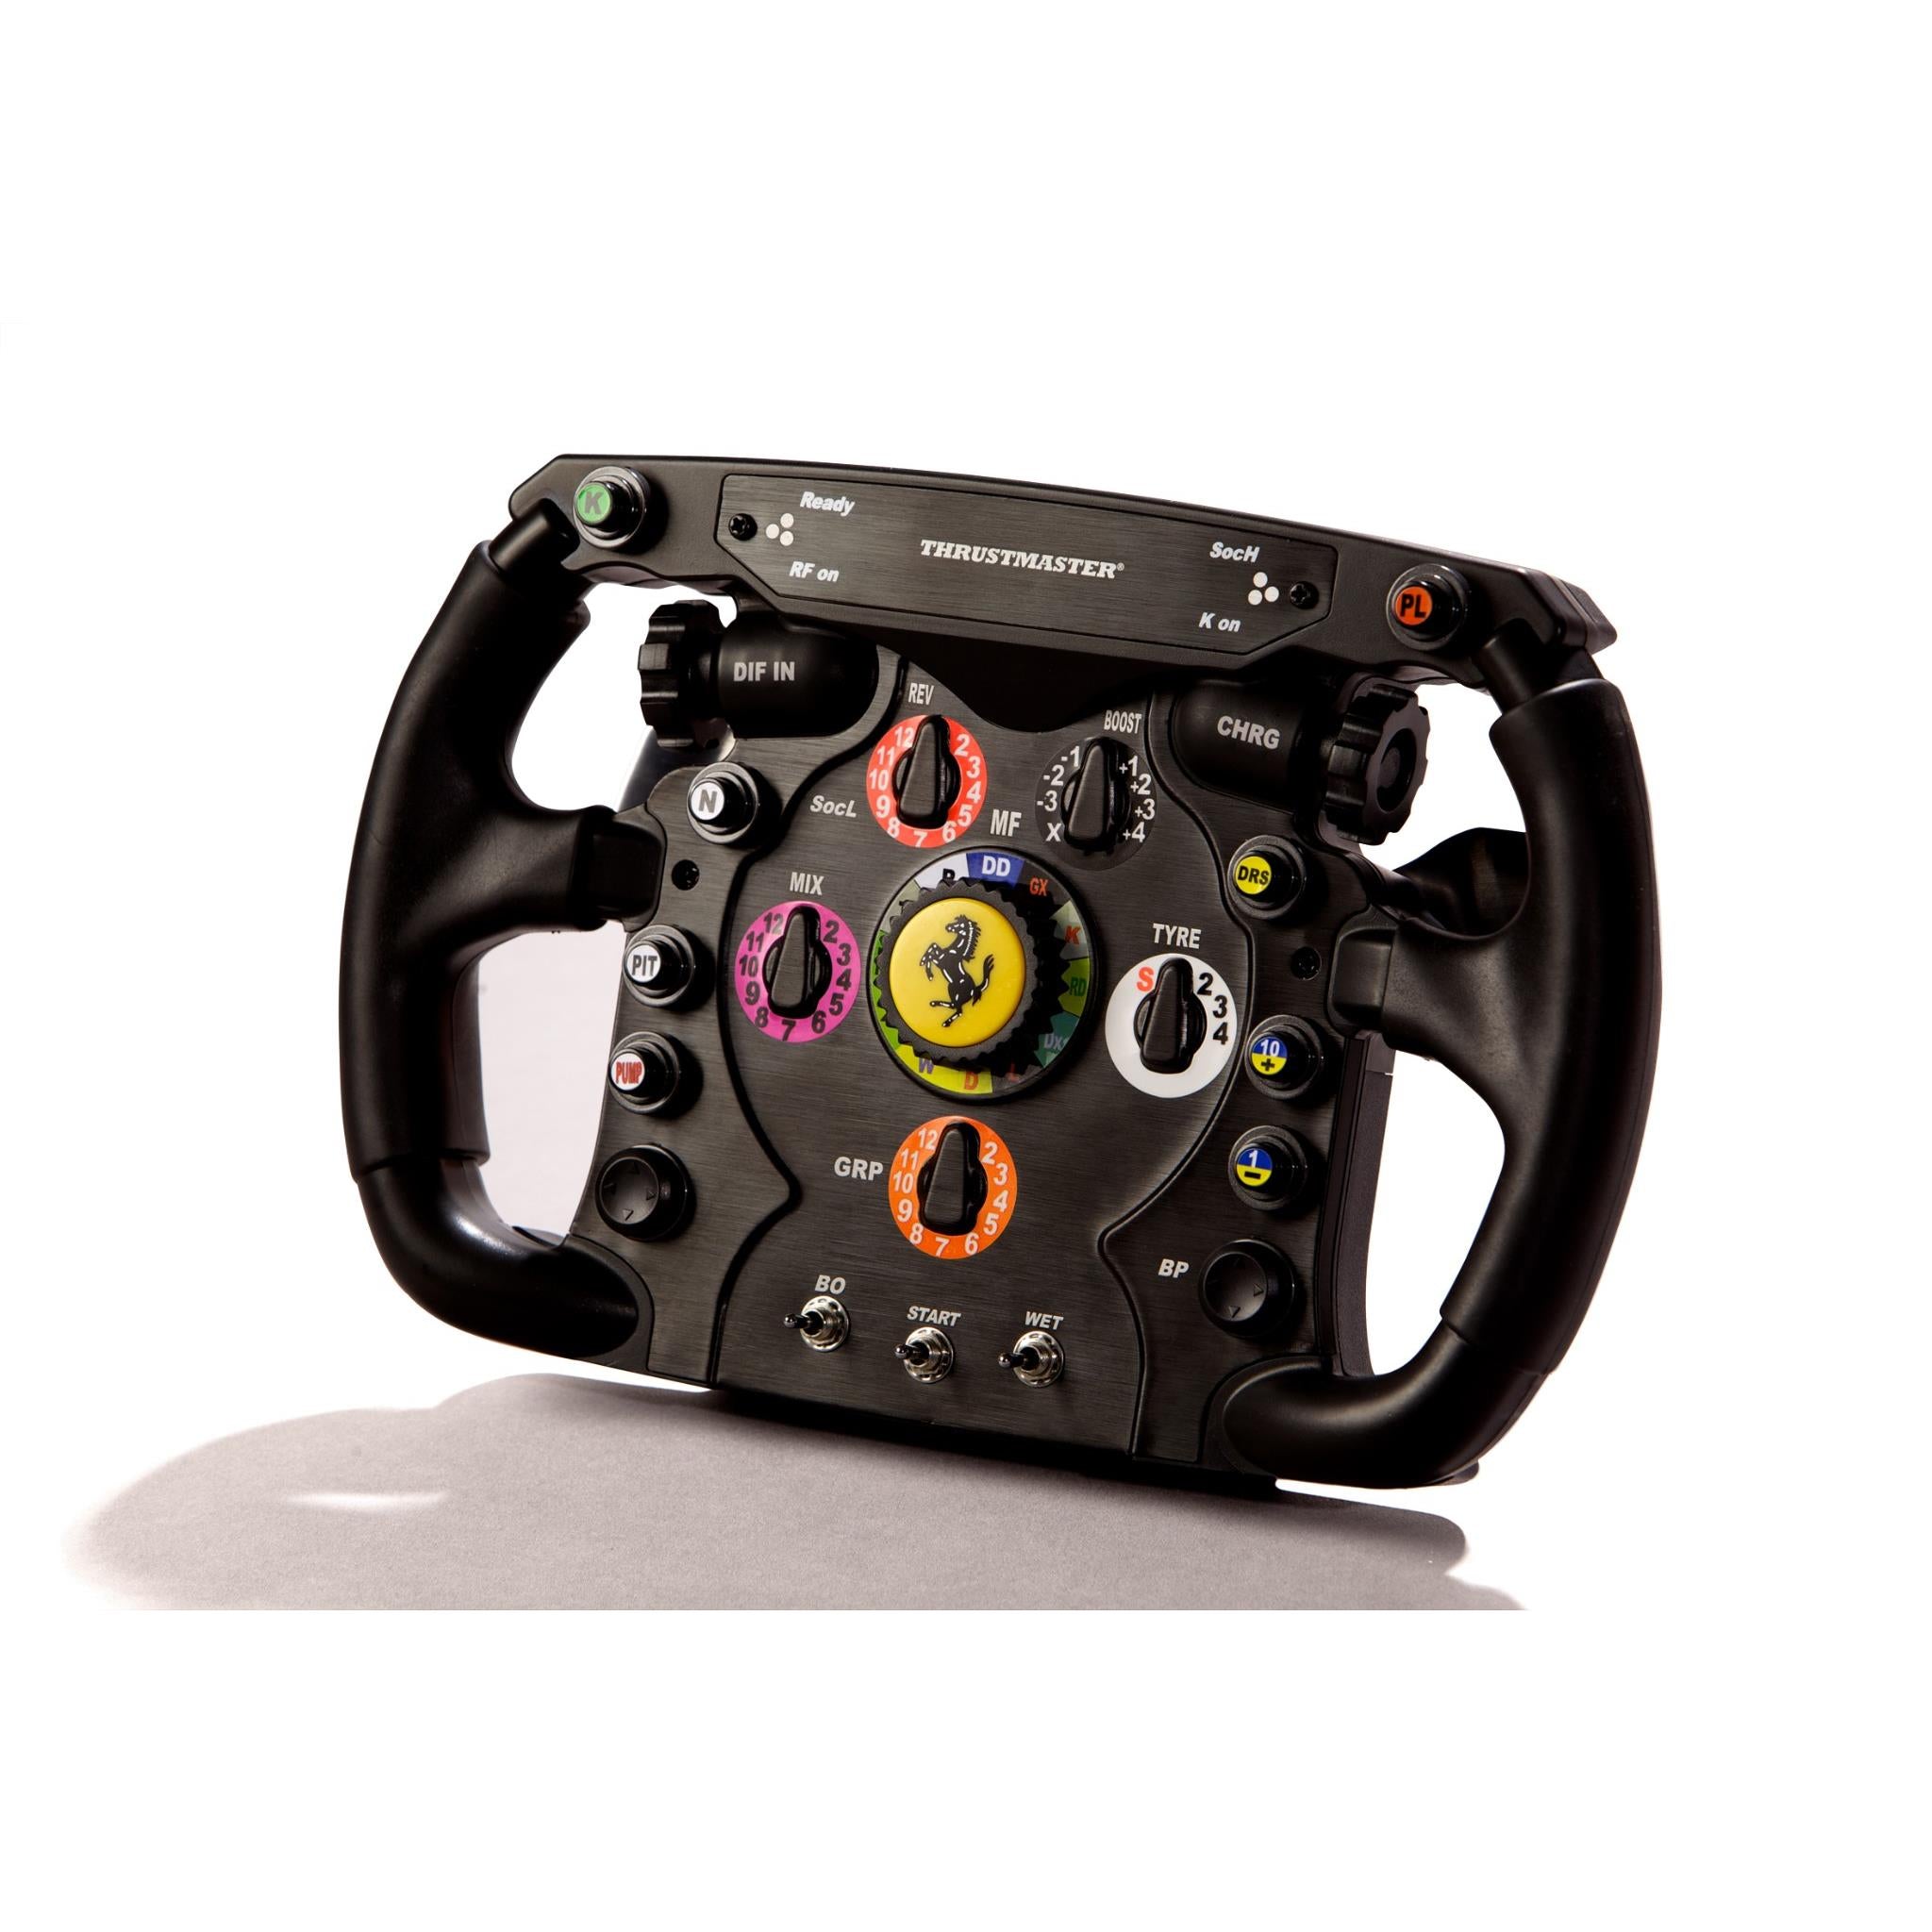 Formula Wheel Add-On Ferrari SF1000 Edition Set up Tutorial